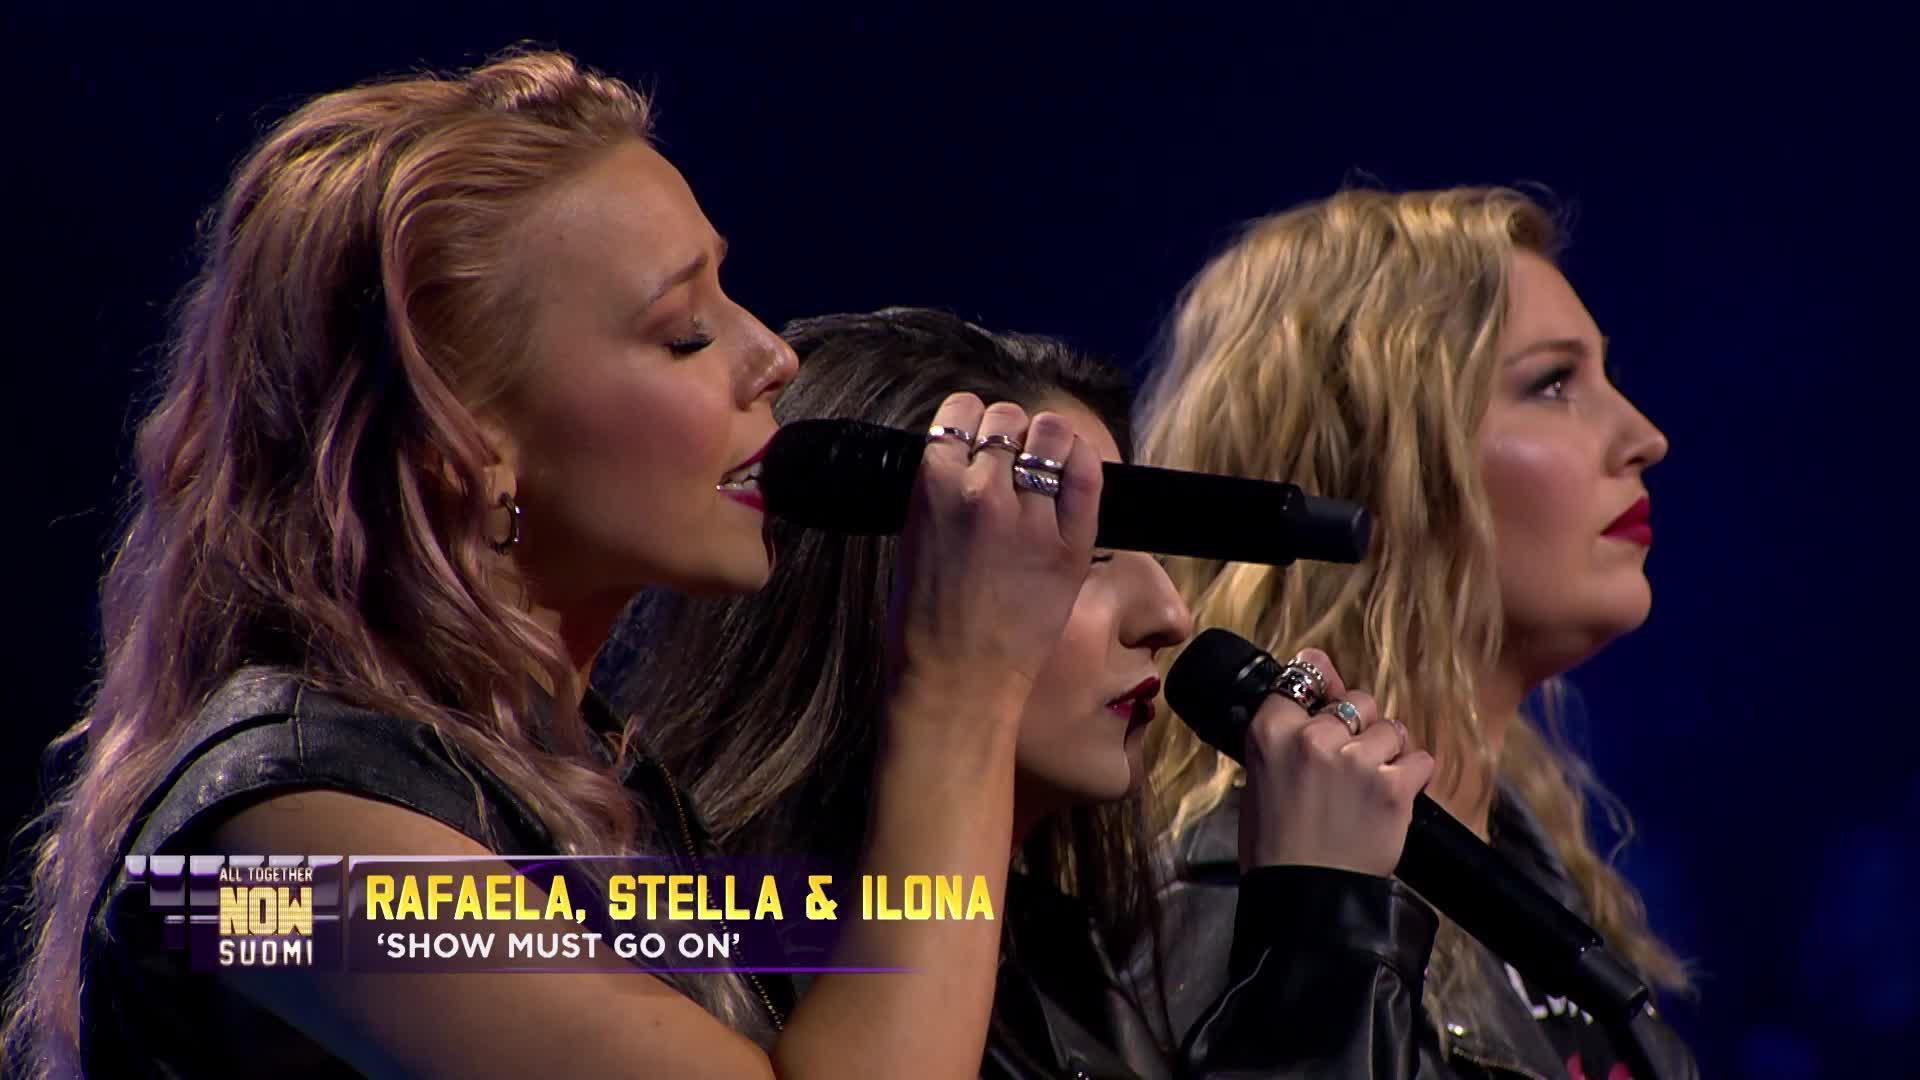 Rafaela, Stella & Ilona – The Show Must Go On